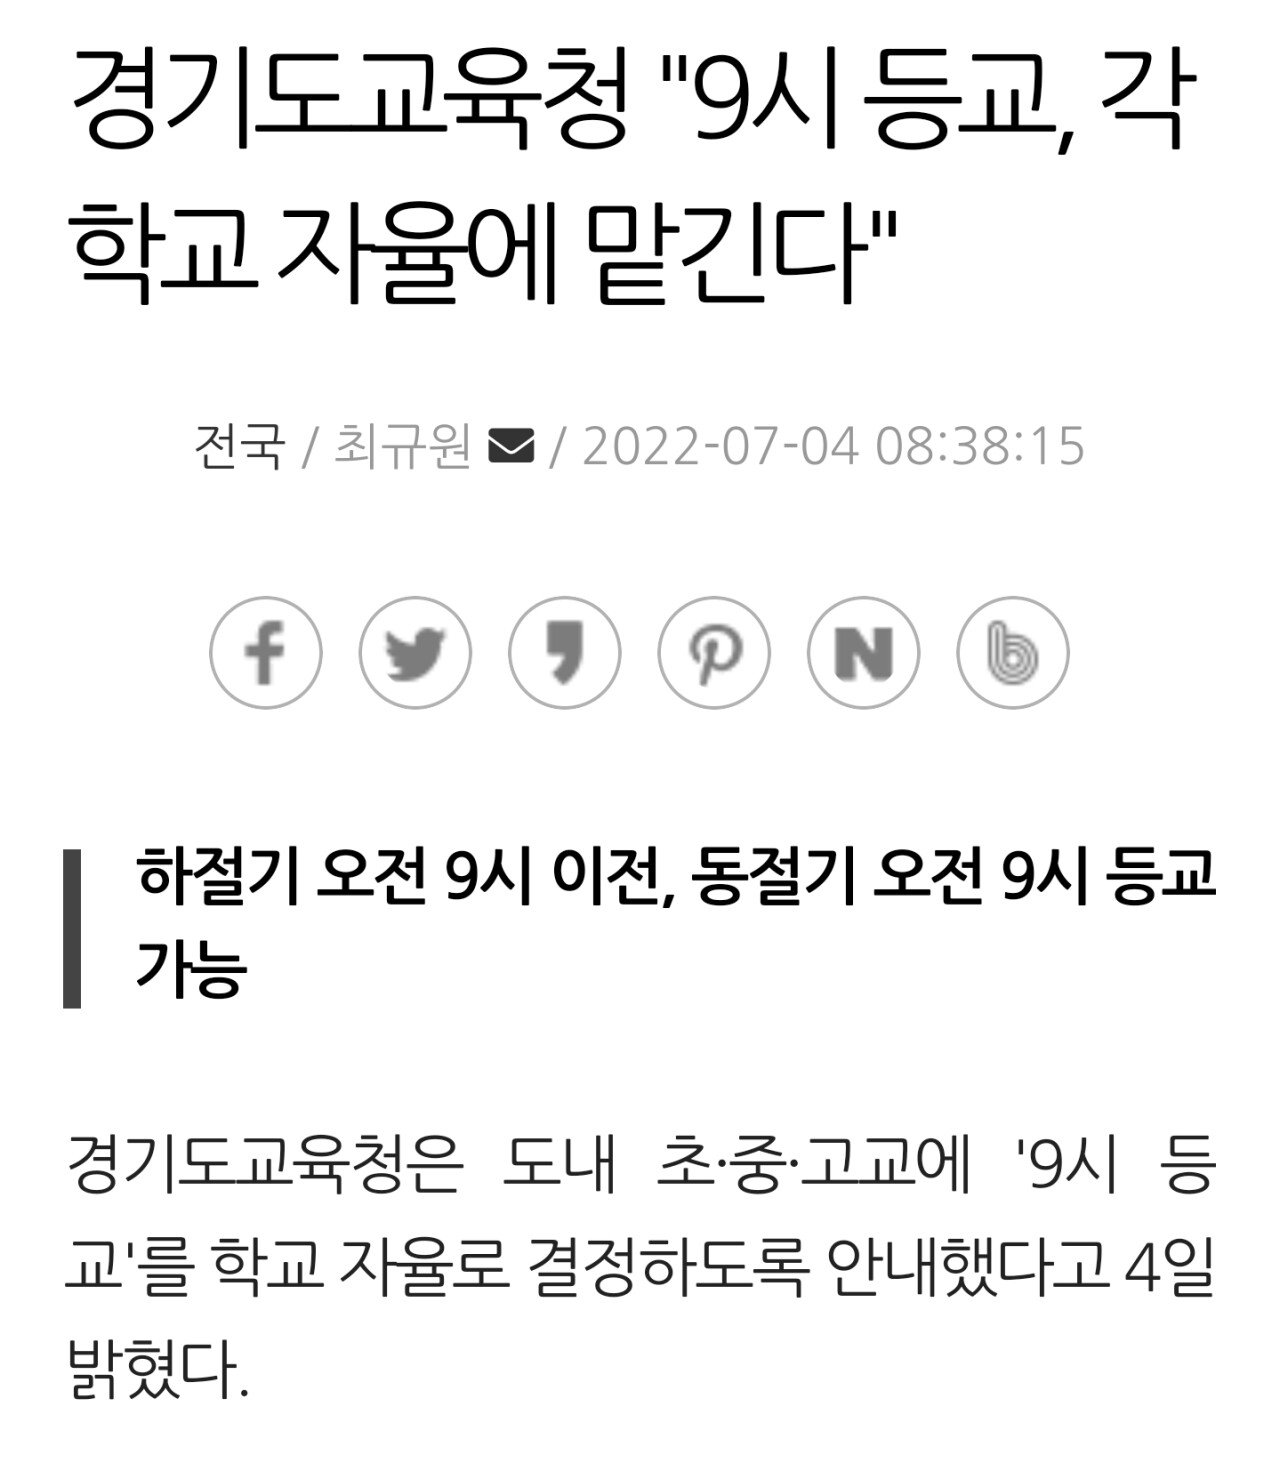 9 o'clock school system in Gyeonggi-do is abolished.jpg